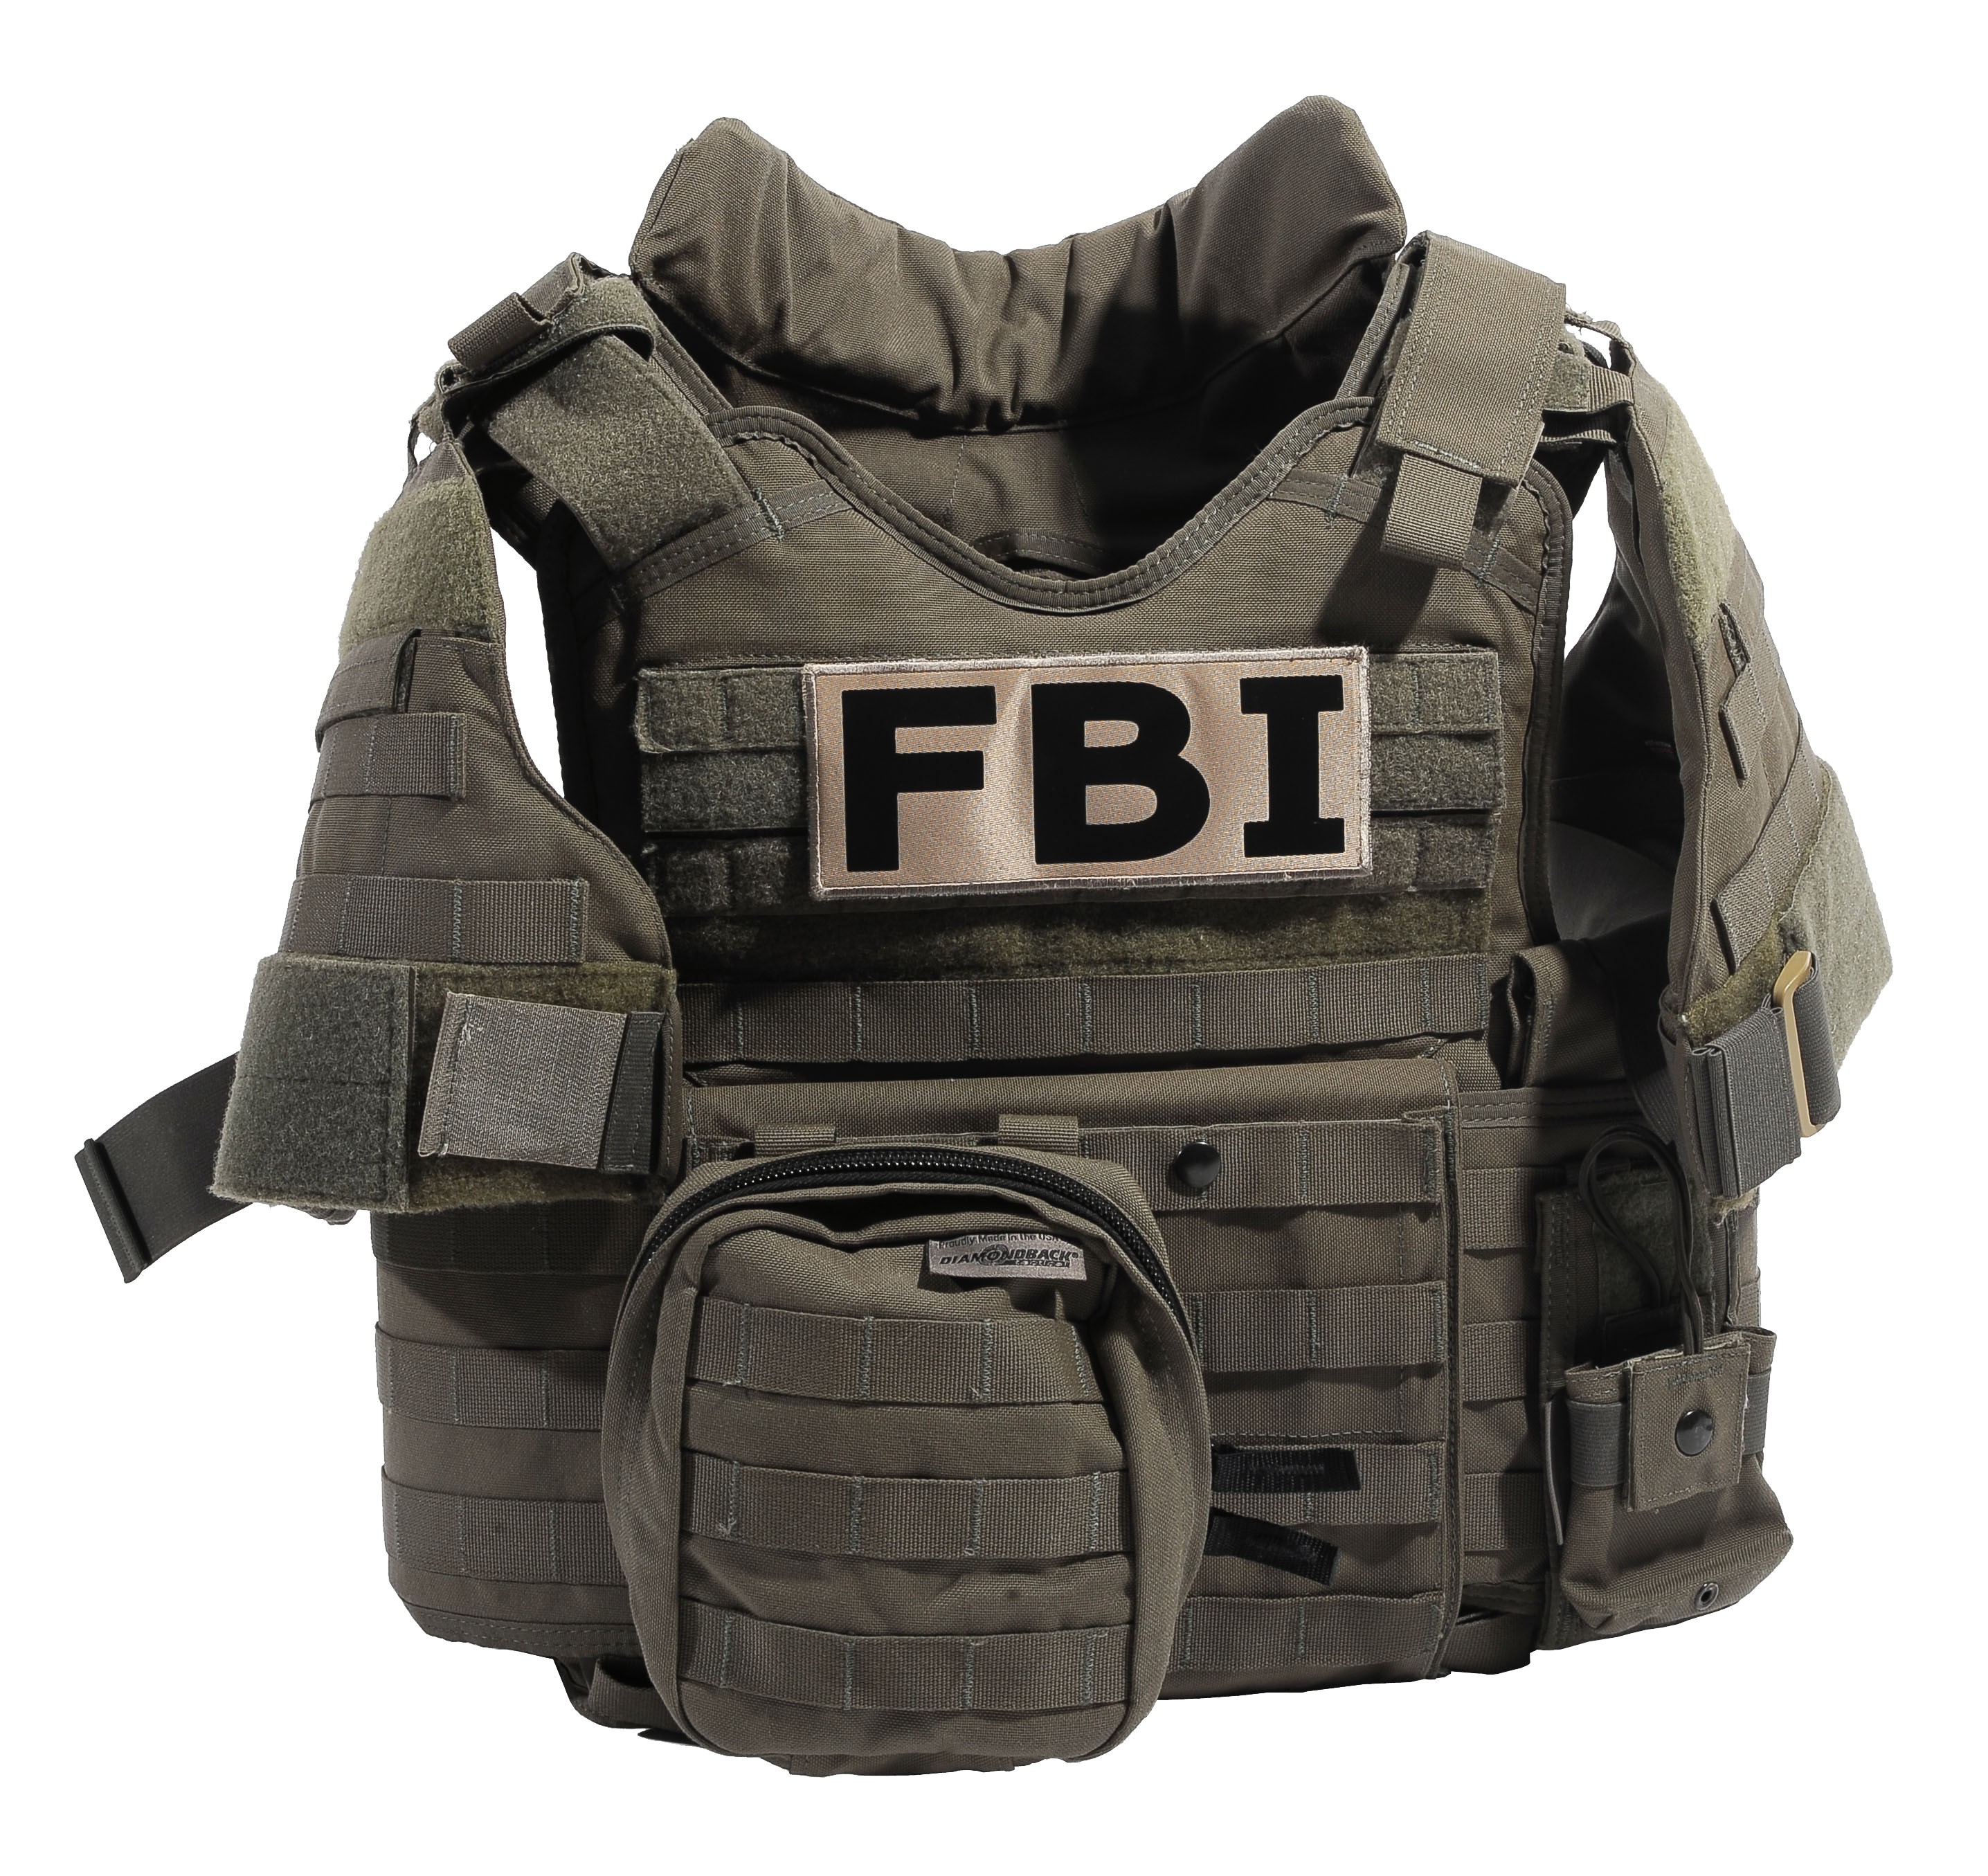 FBI Bulletproof Vest PNG Image